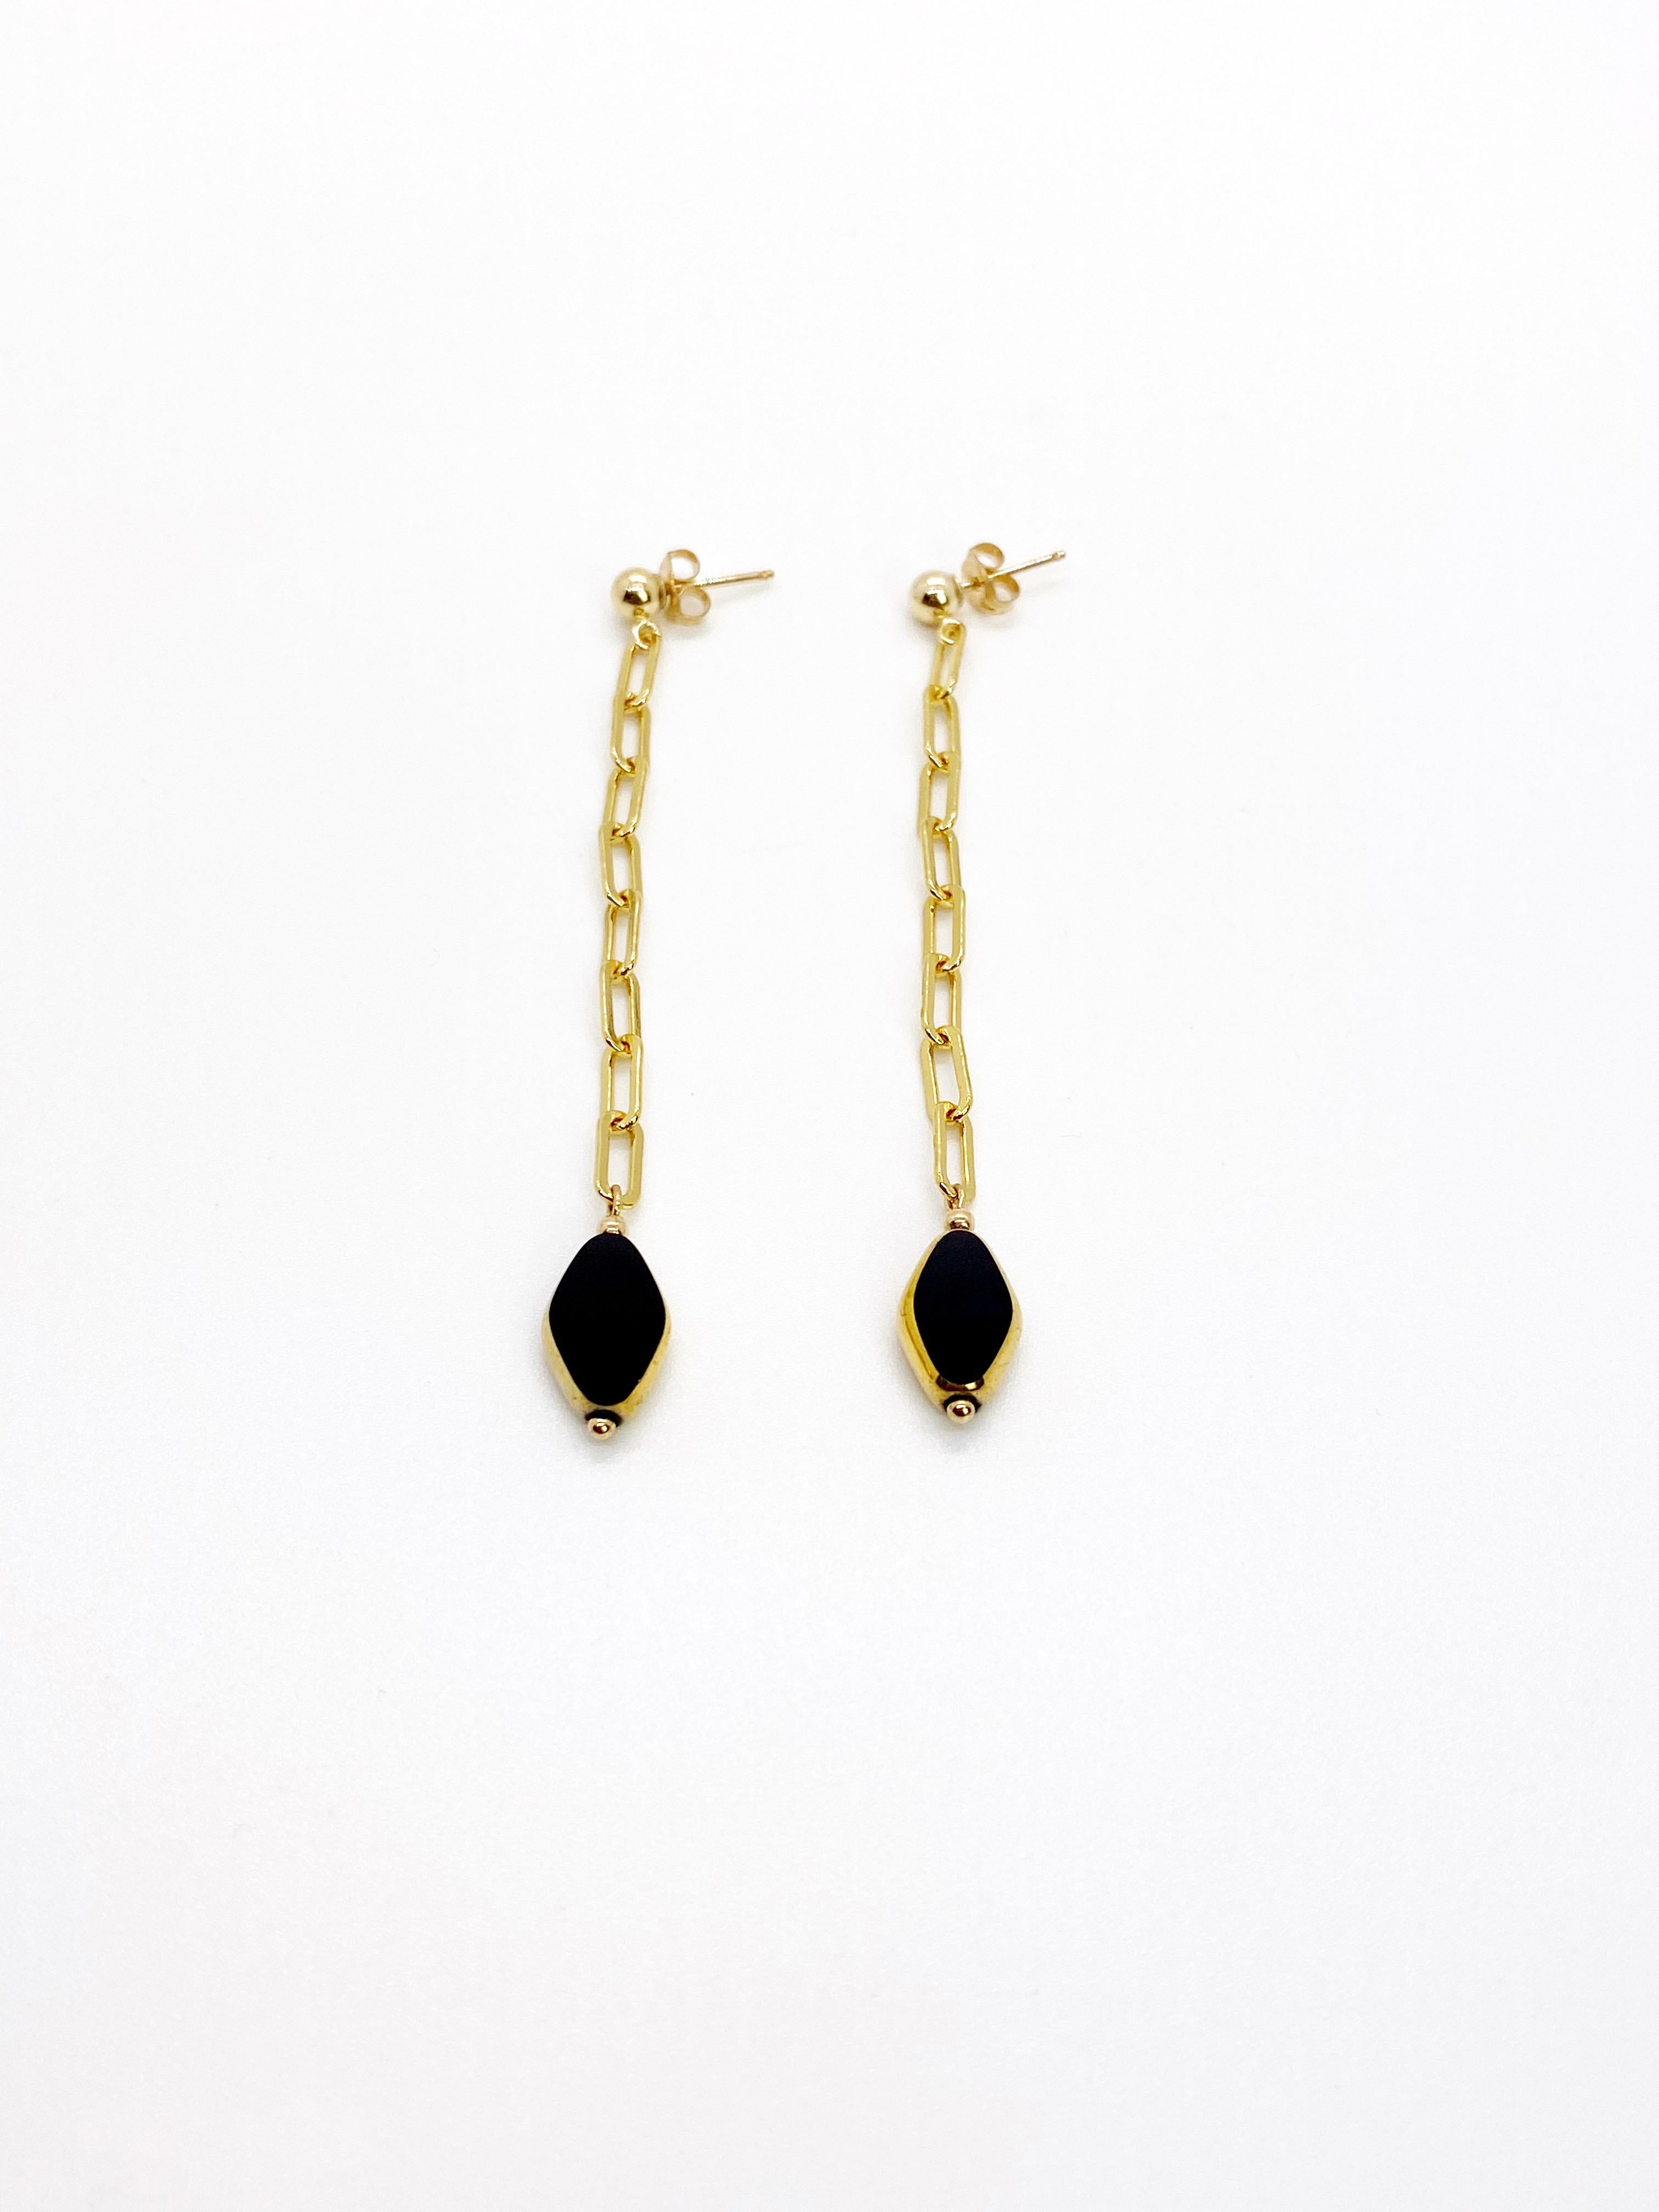 Perles de verre allemand vintage en forme de diamant noir bordées d'or 24K sur des chaînes et des clous d'oreilles en or 14K.

Les perles de verre allemandes vintage sont considérées comme rares et de collection, vers les années 1920-1960.

*Nos